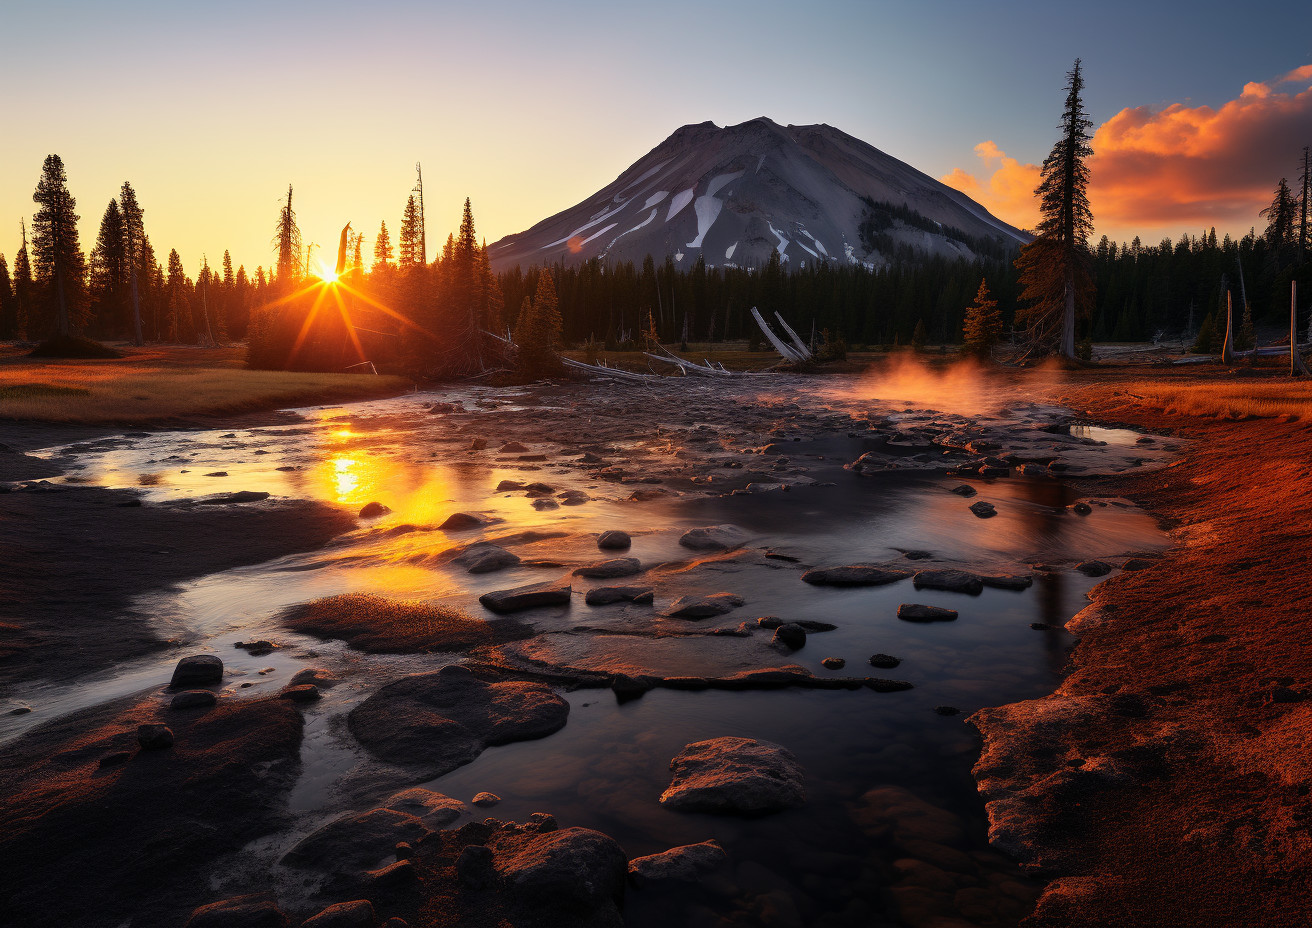 Digital art inspired by Lassen Volcanic National Park